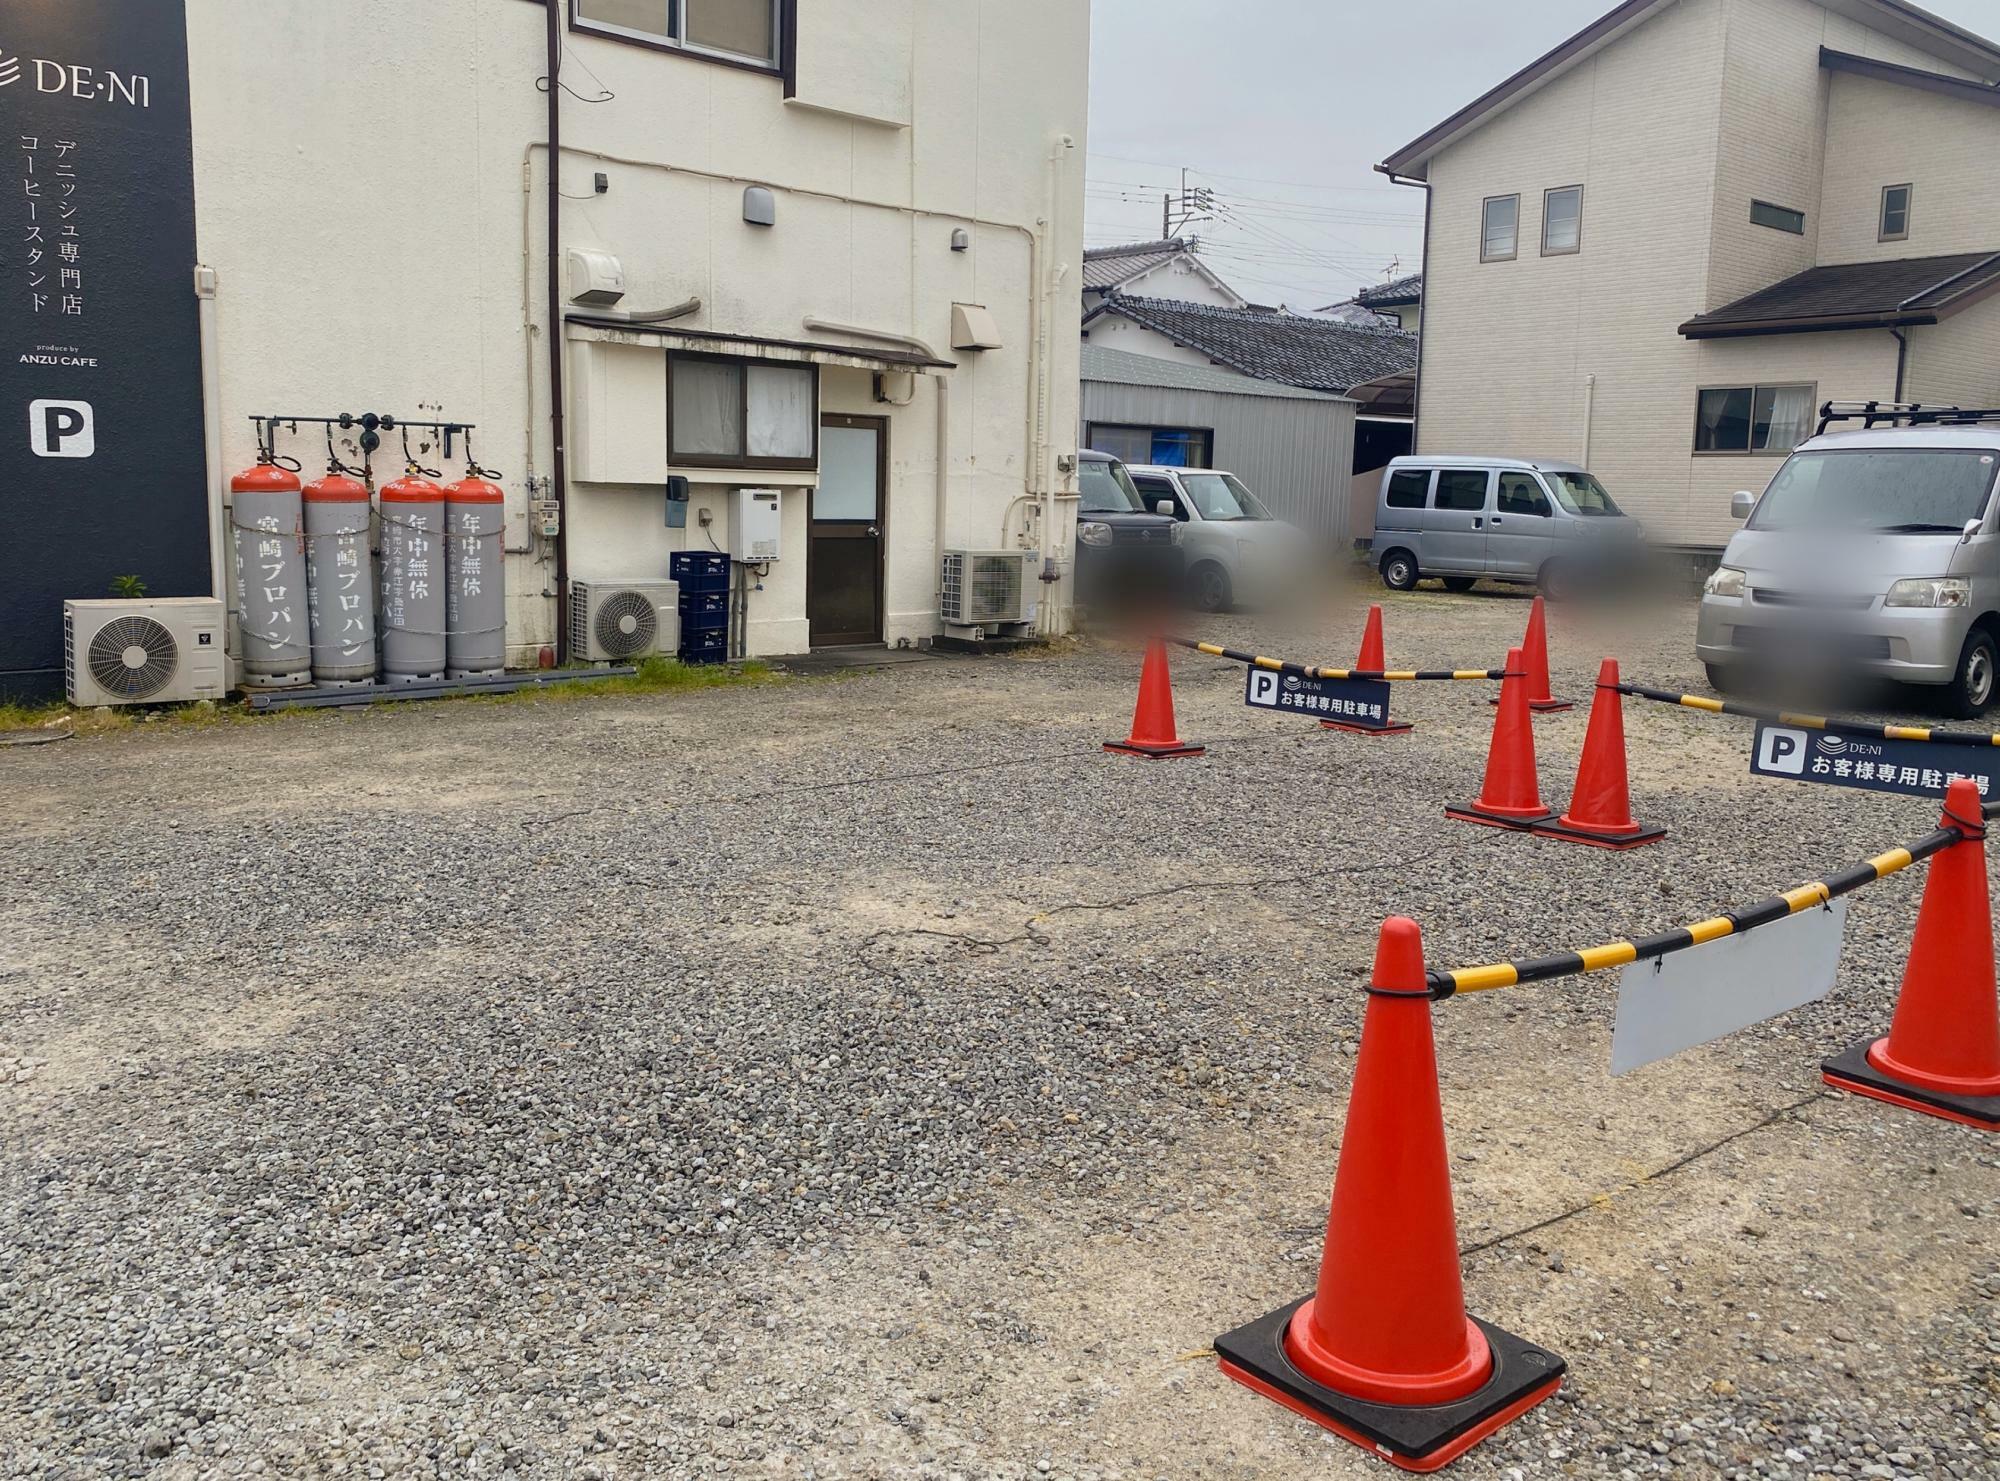 車社会の宮崎では、専用駐車場2台では追いつかないぐらいだなと感じました。